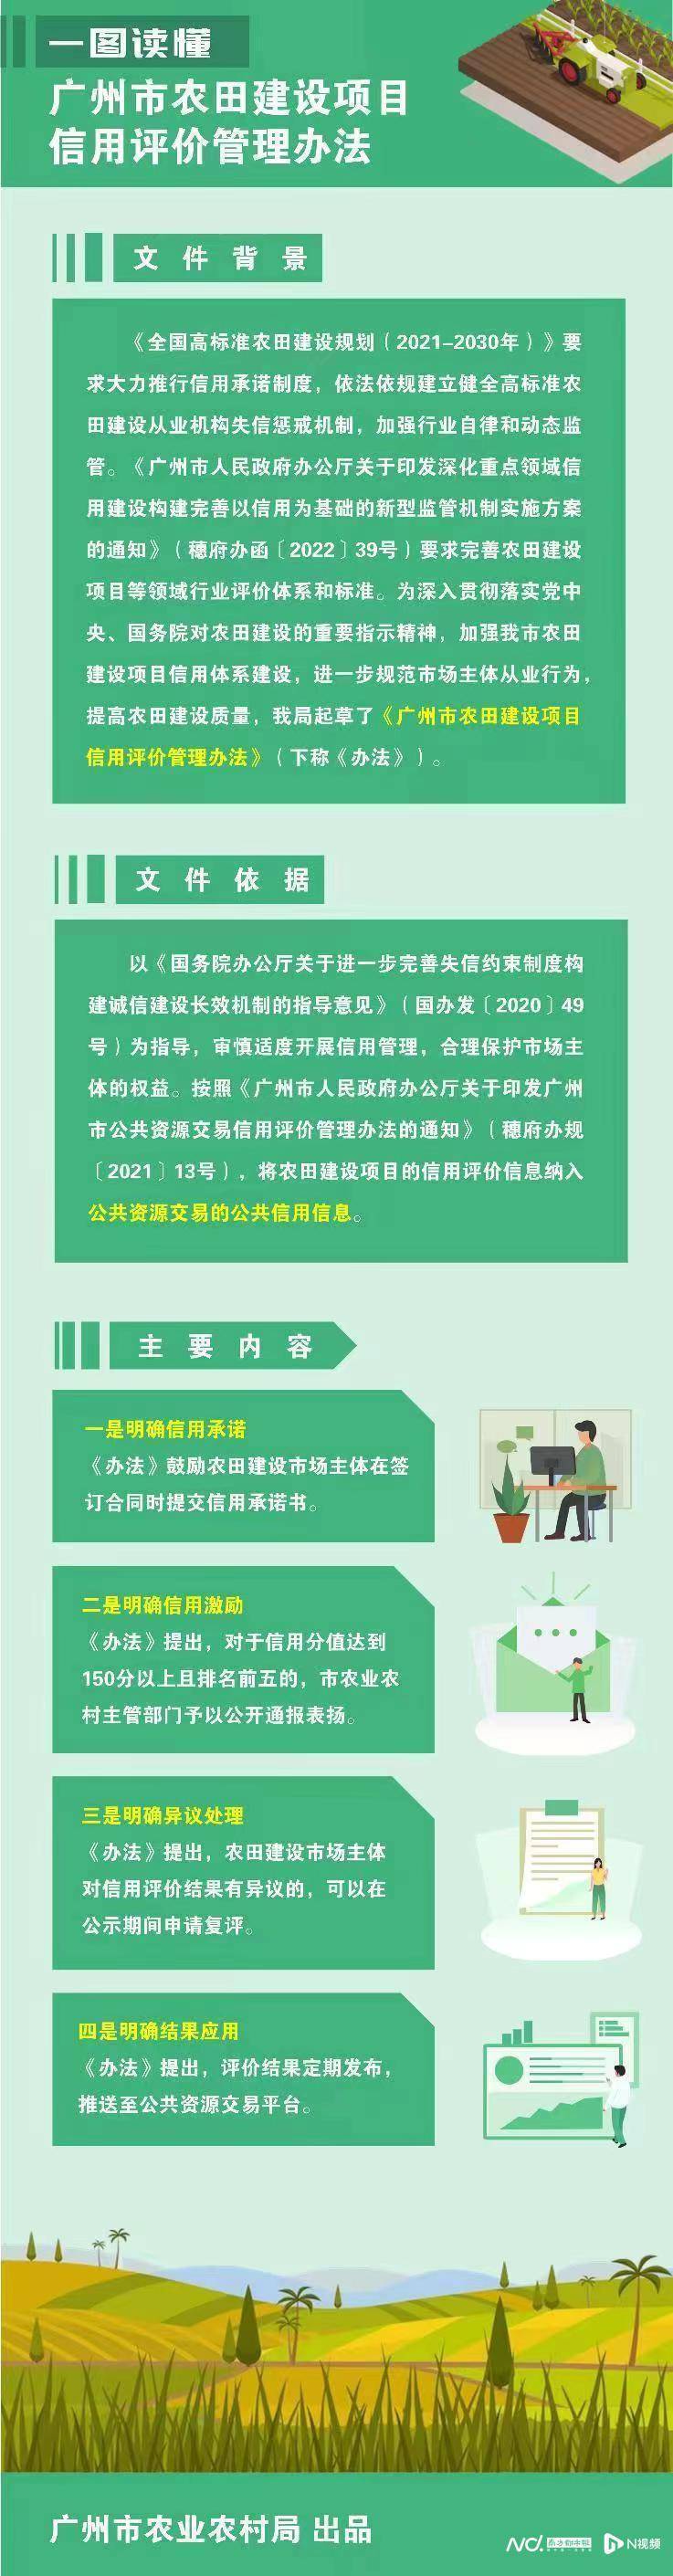 广州明年起实施农田建设项目信用评价管理办法